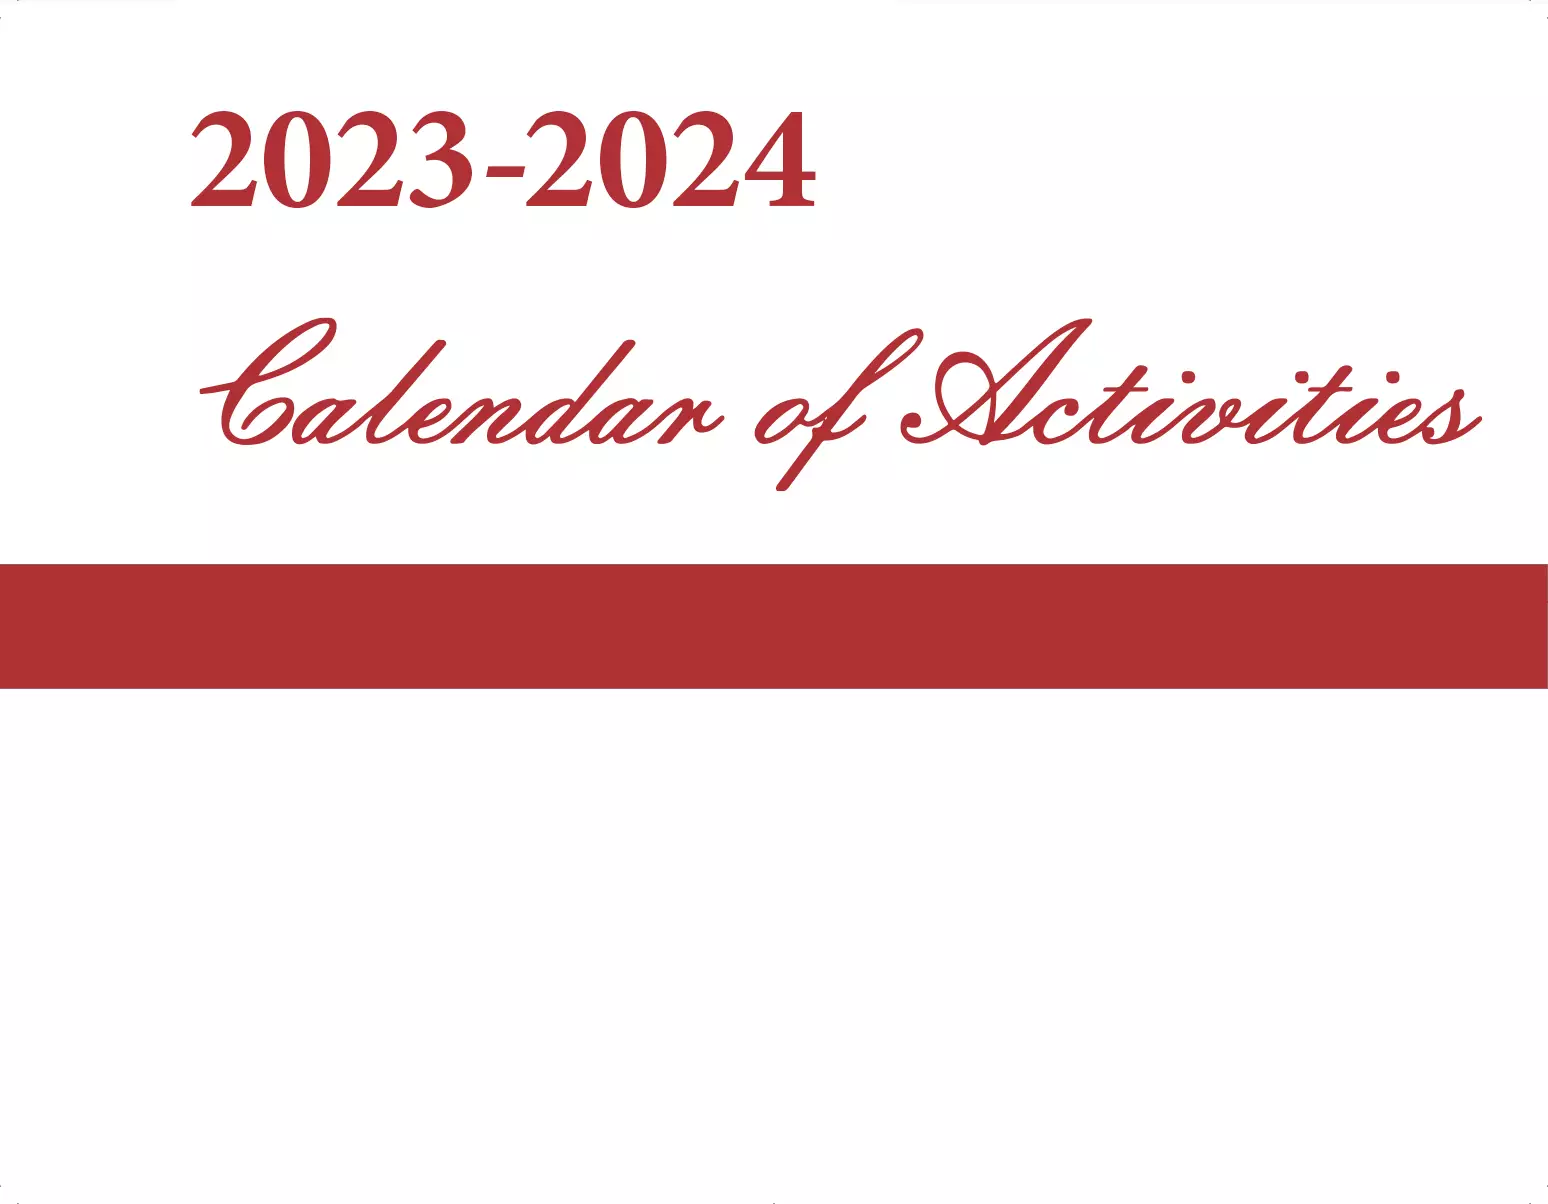 Calendar of Activities: 2023-2024